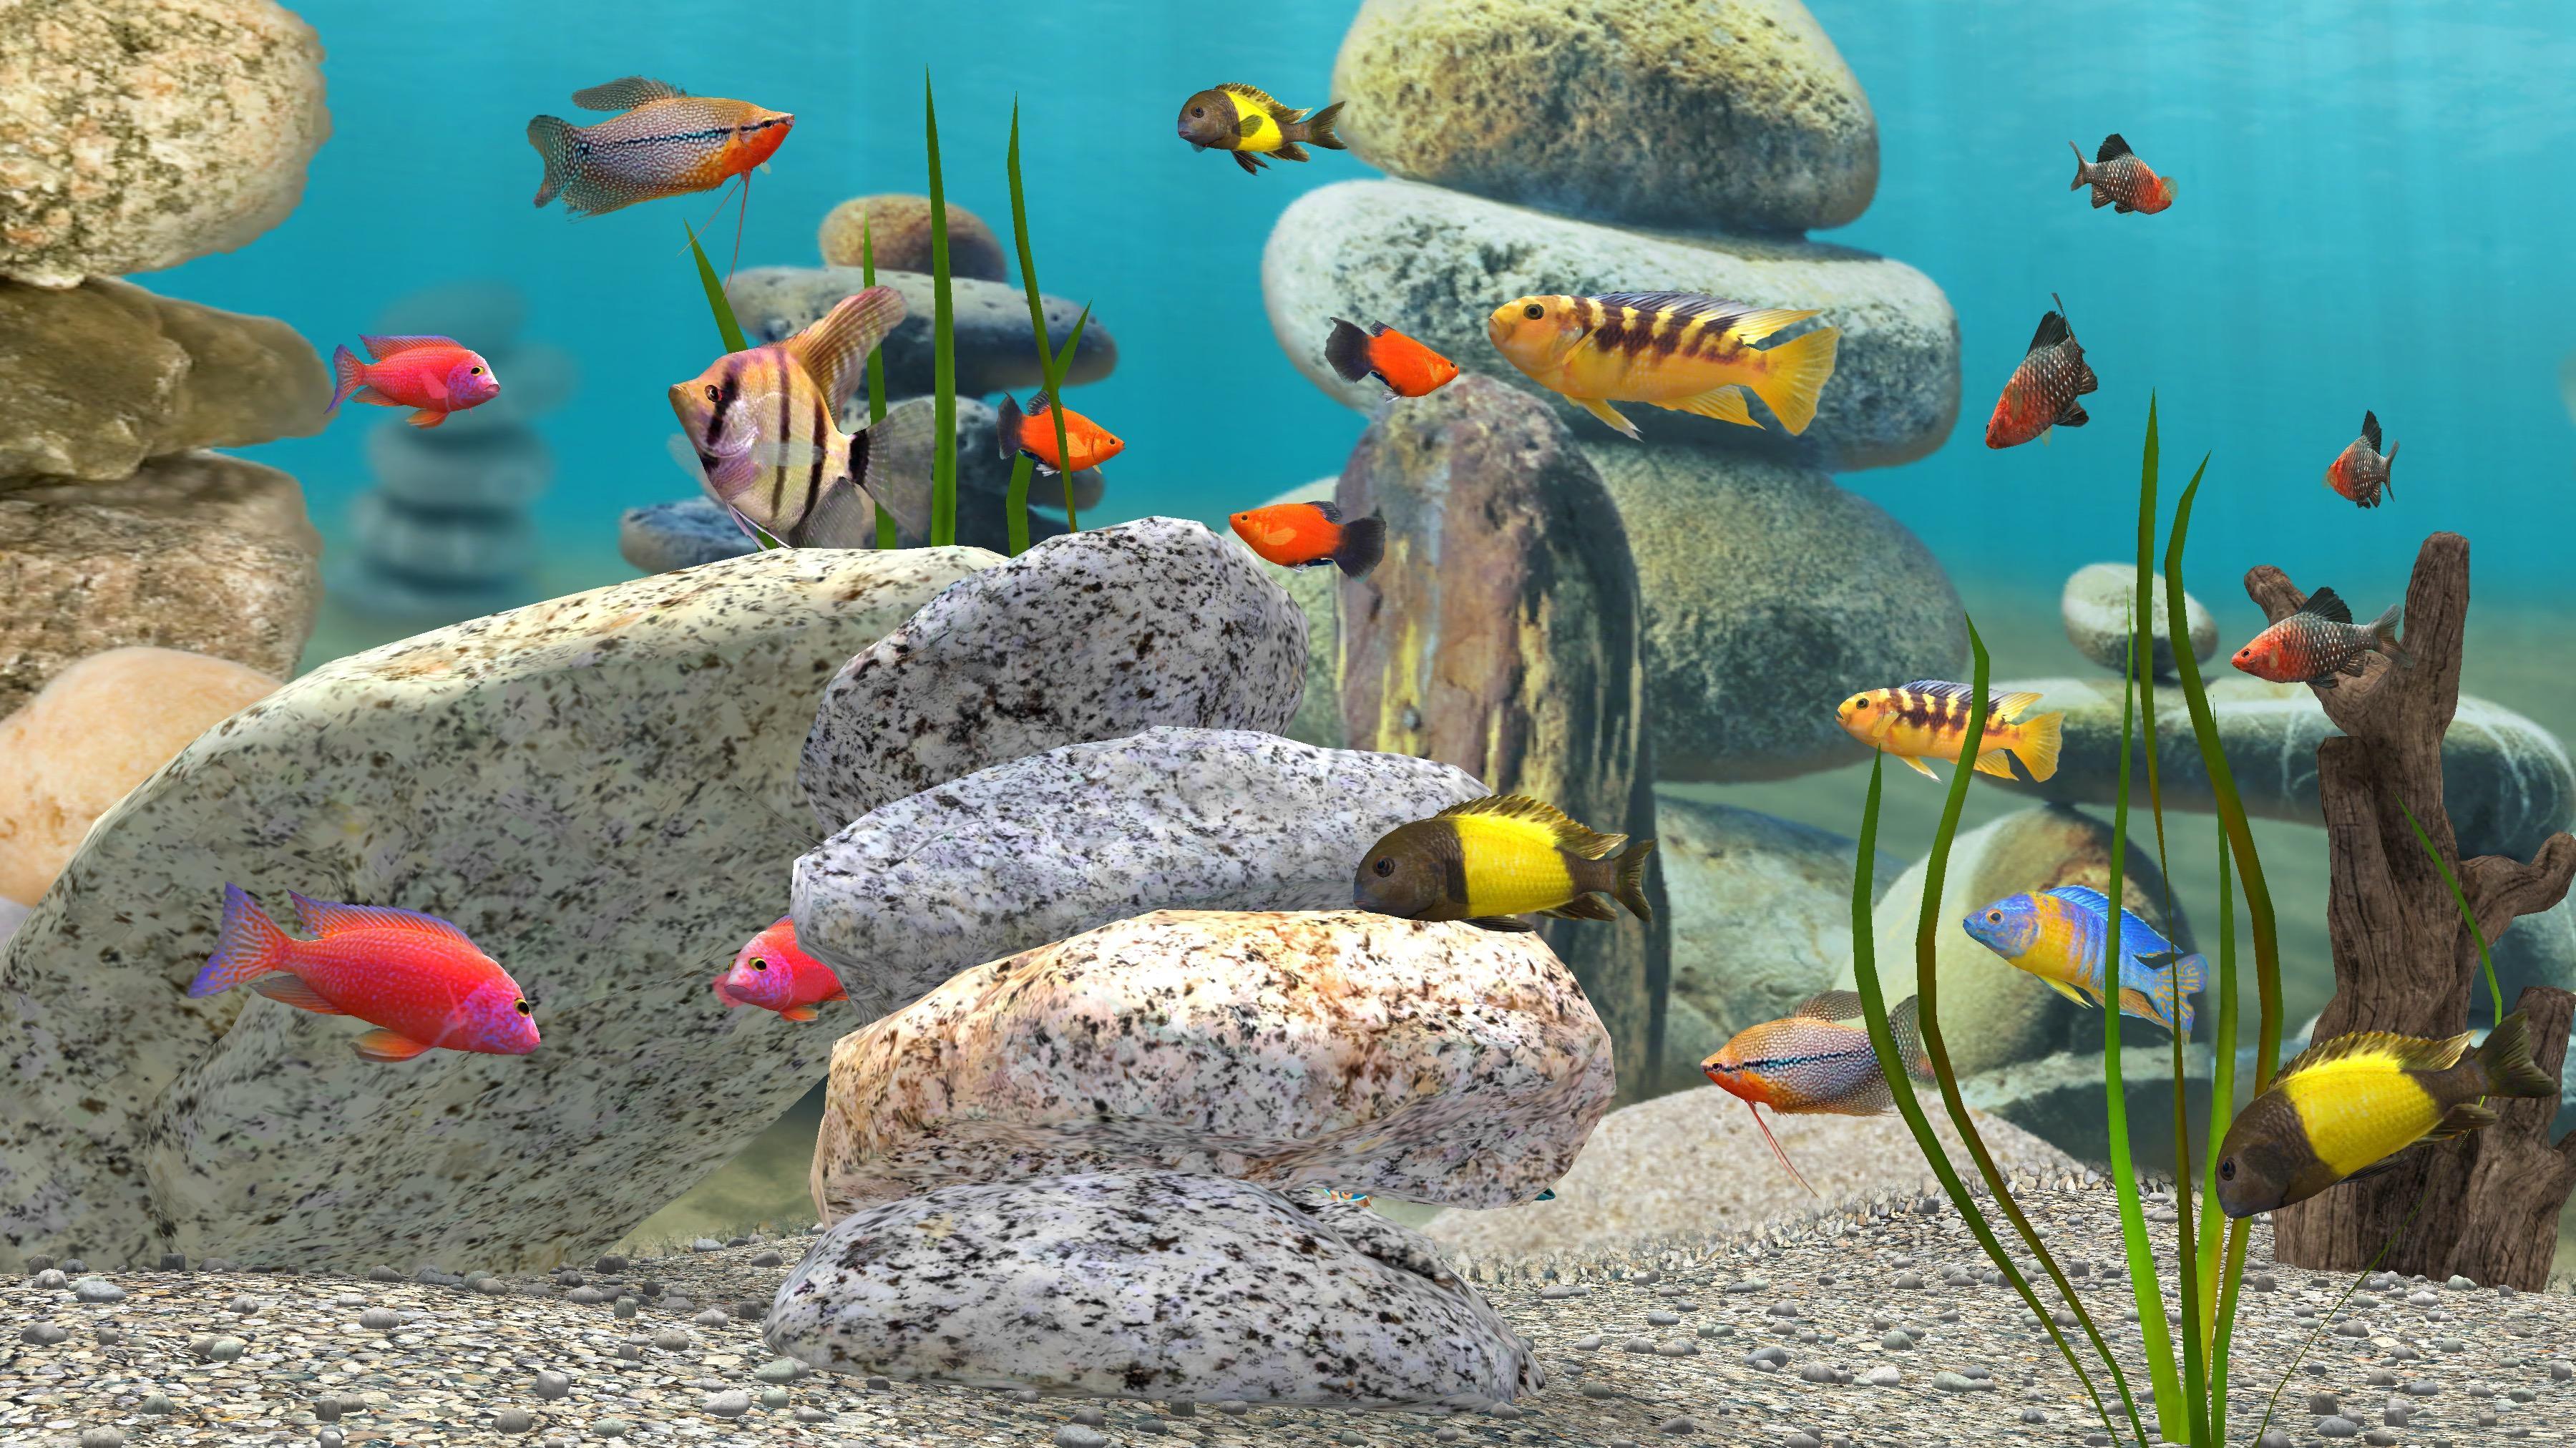 Live Aquarium Wallpapers - Top Free Live Aquarium Backgrounds -  WallpaperAccess